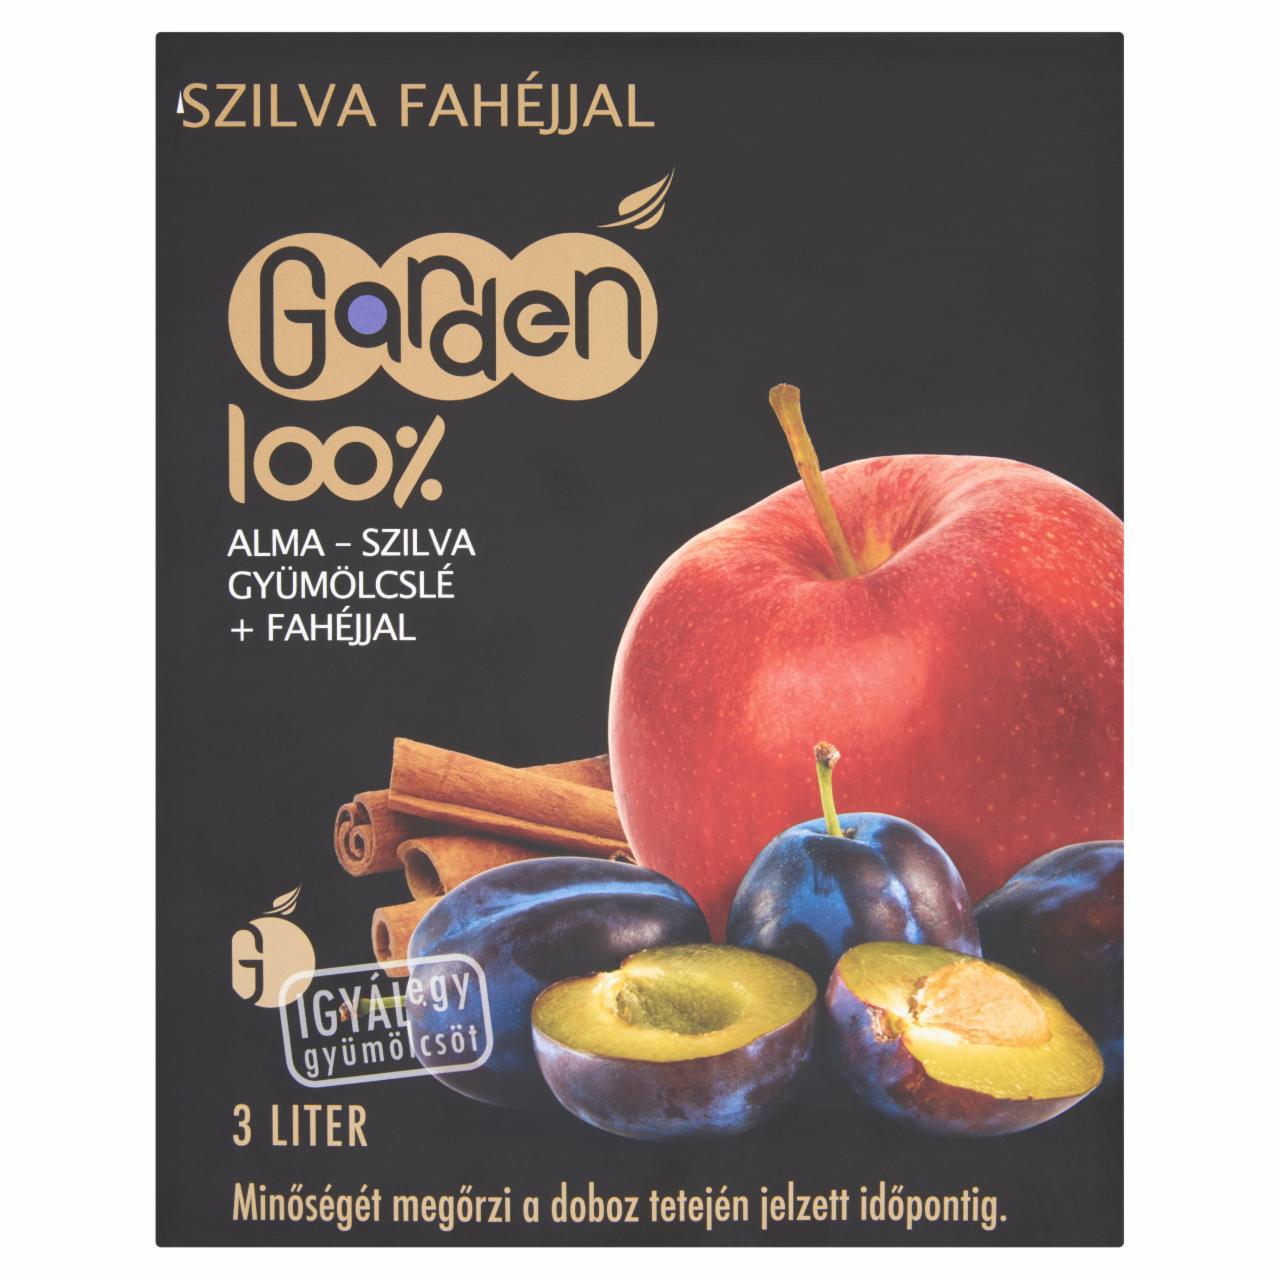 Képek - Garden 100% alma-szilva gyümölcslé fahéjjal 3 l